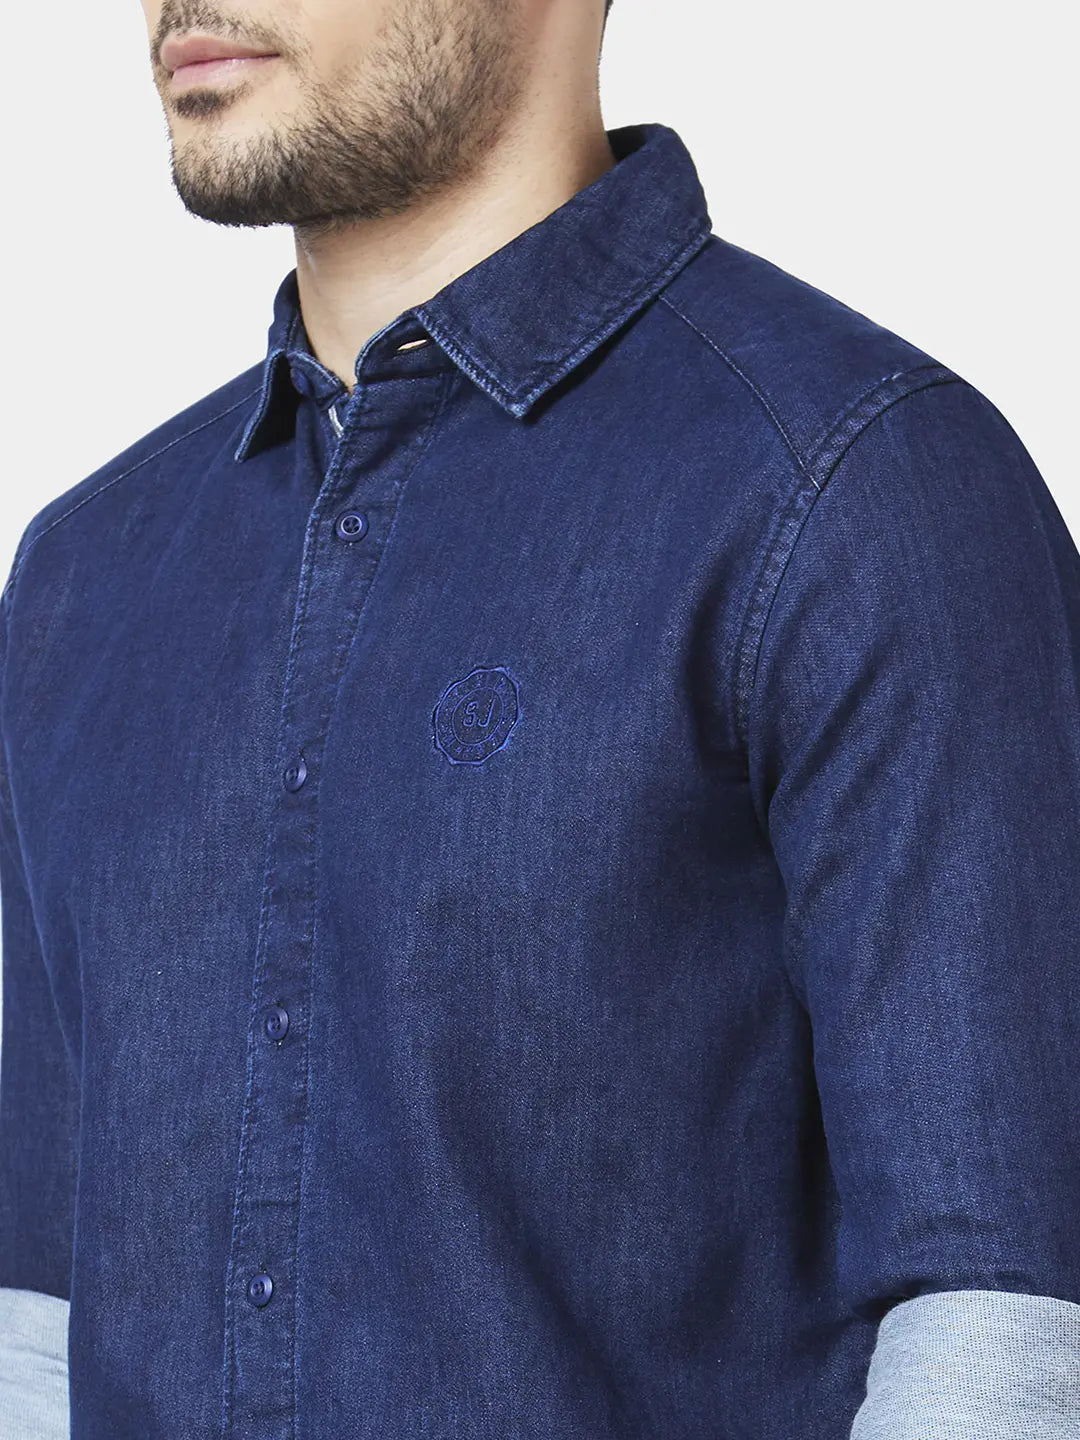 Blue Shirt Matching Pants | Blue shirt combination, Men fashion casual  shirts, Blue denim shirt